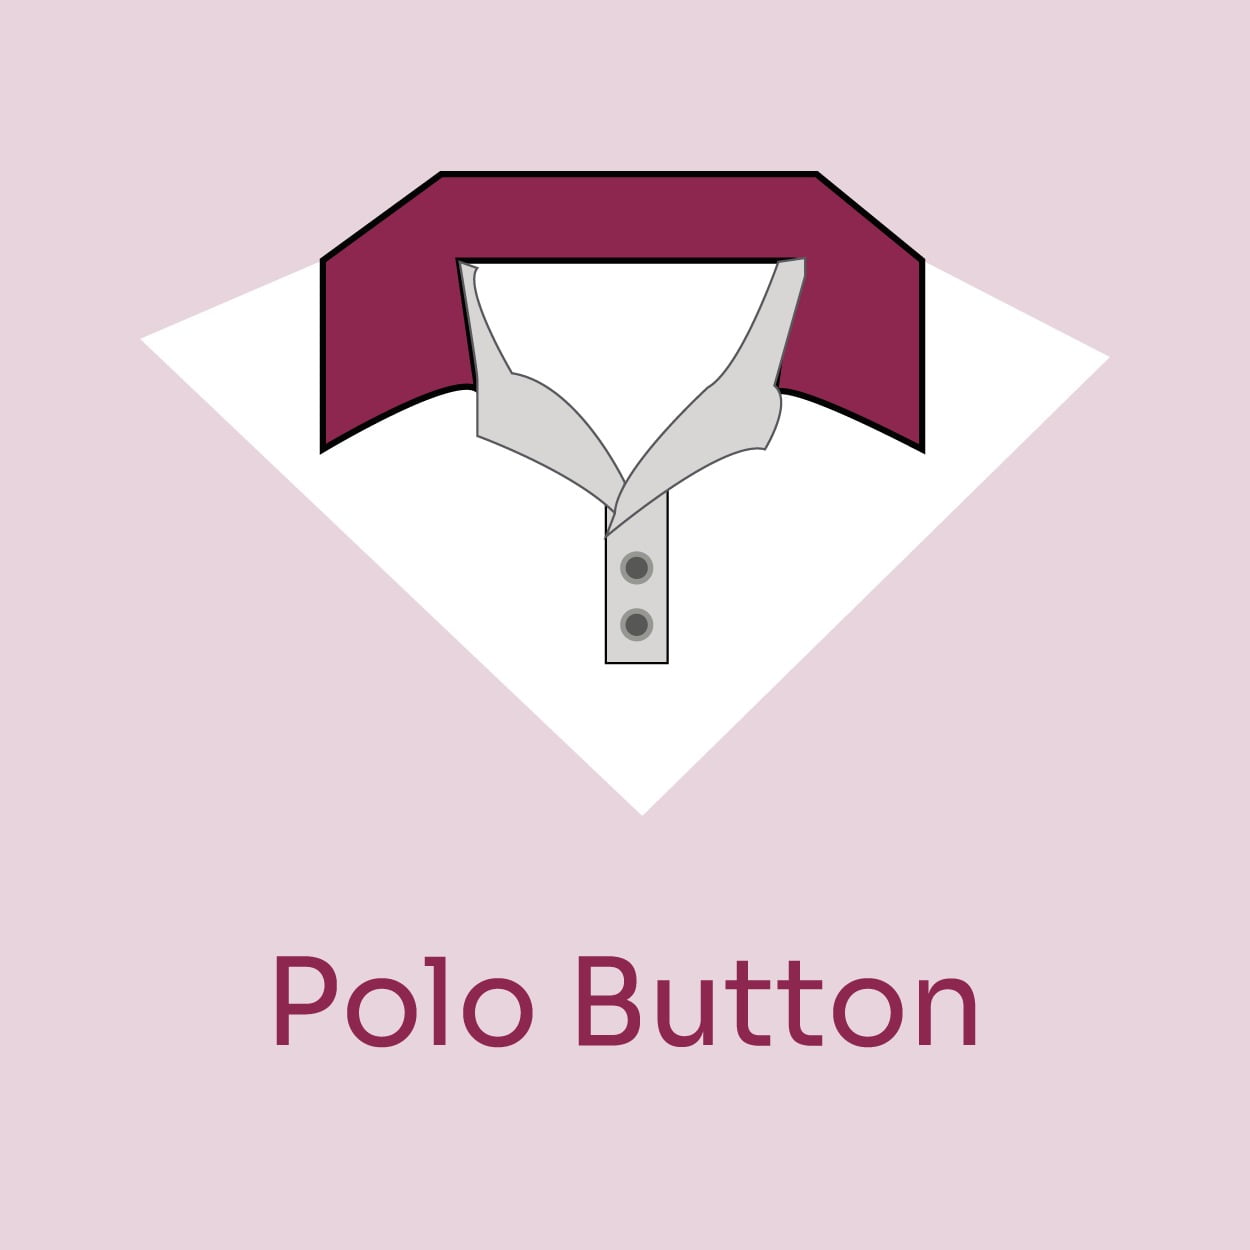 Polo Button